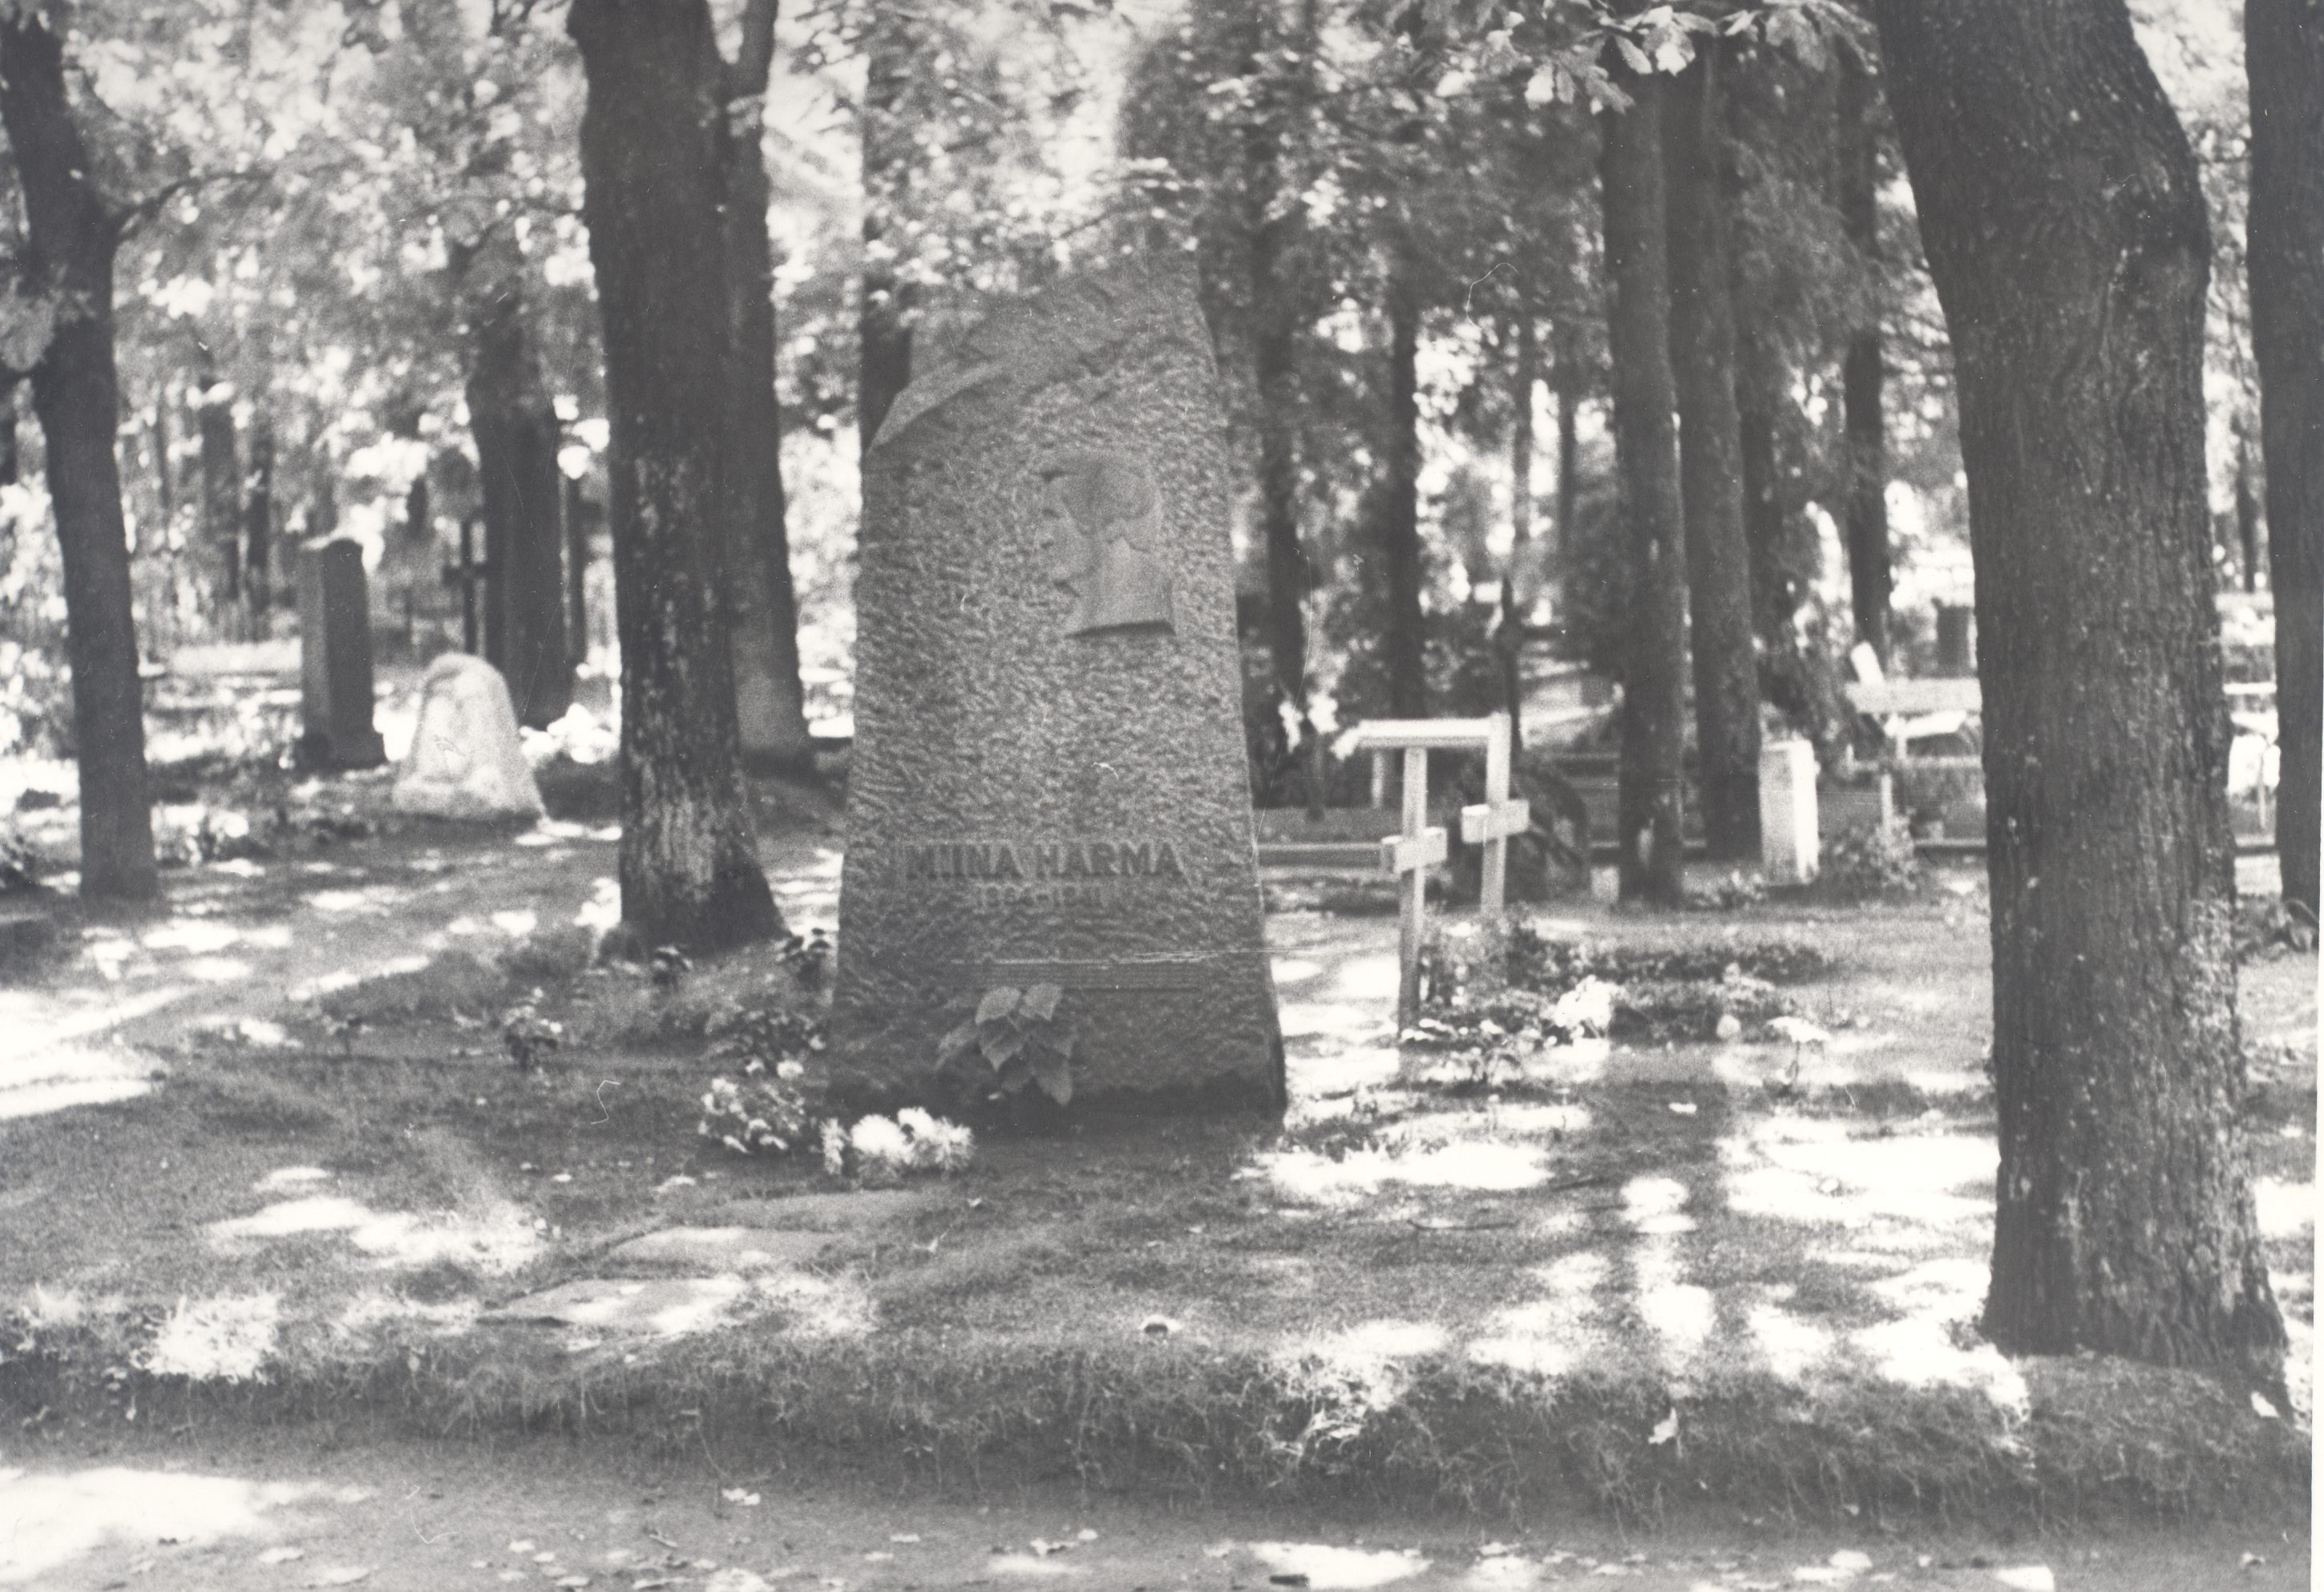 Härma, Miina grave in Tartu on Raaadi cemetery